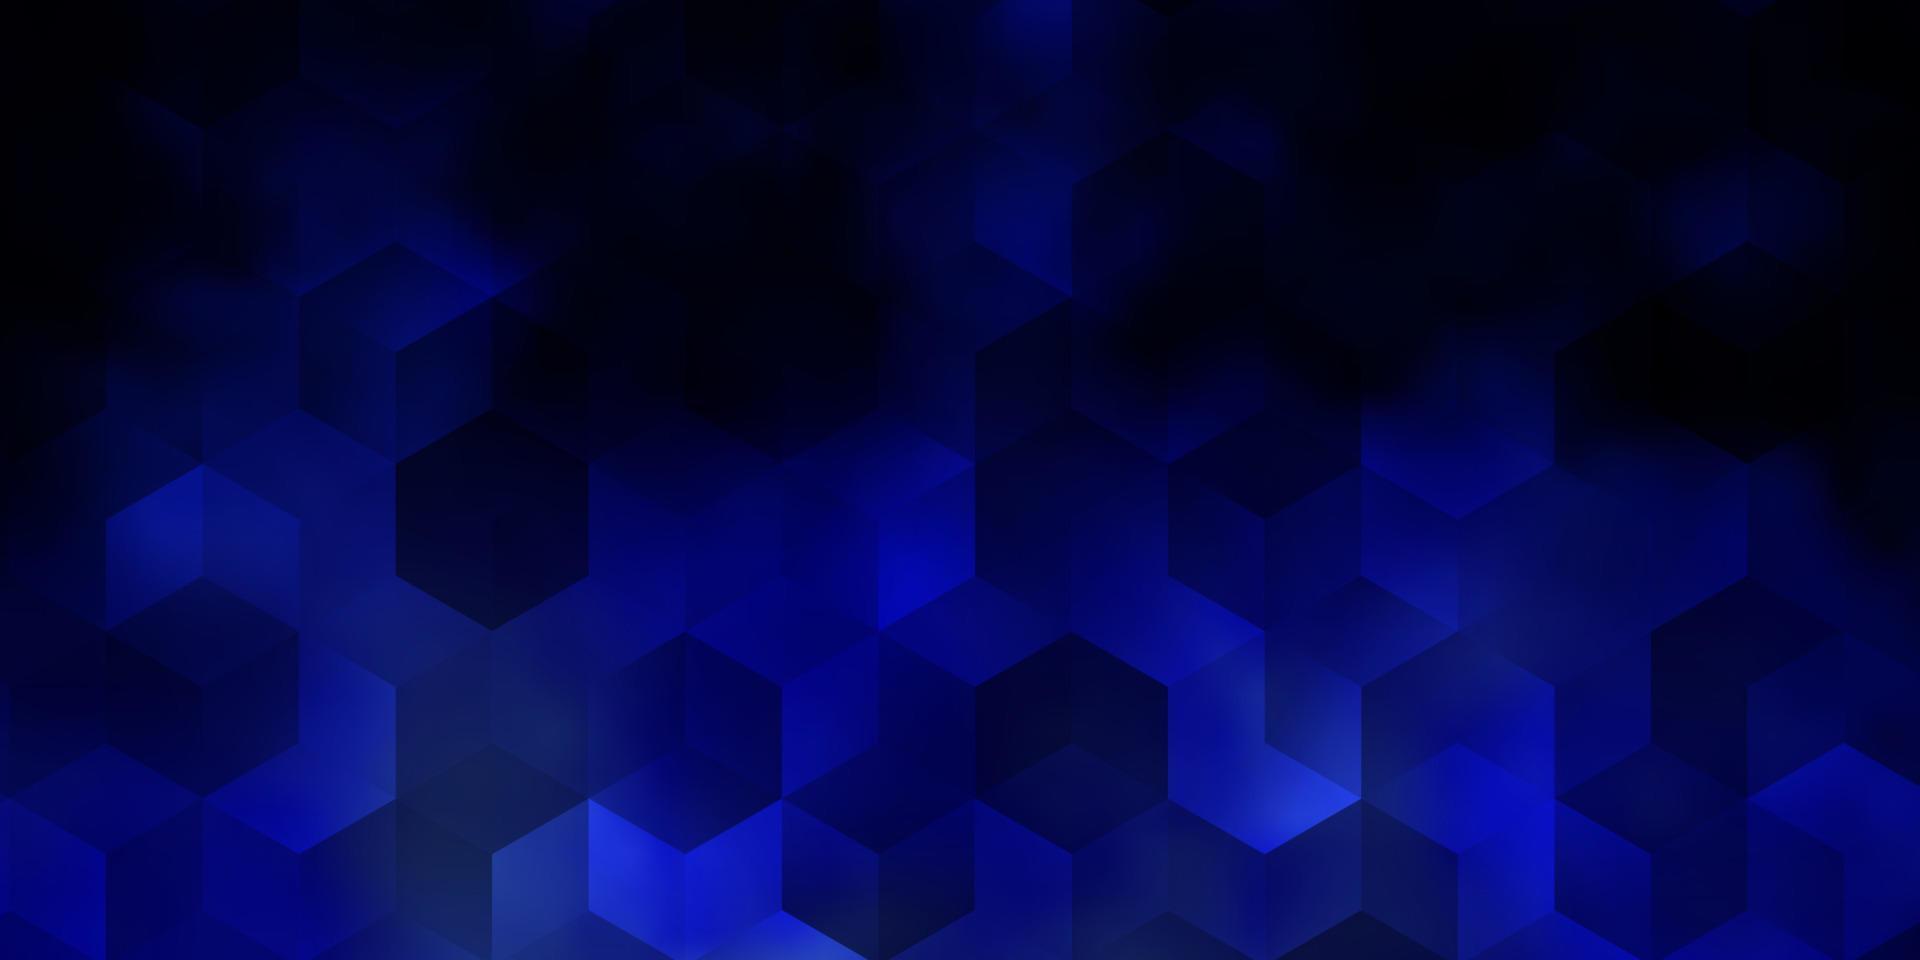 padrão de vetor azul escuro com hexágonos coloridos.